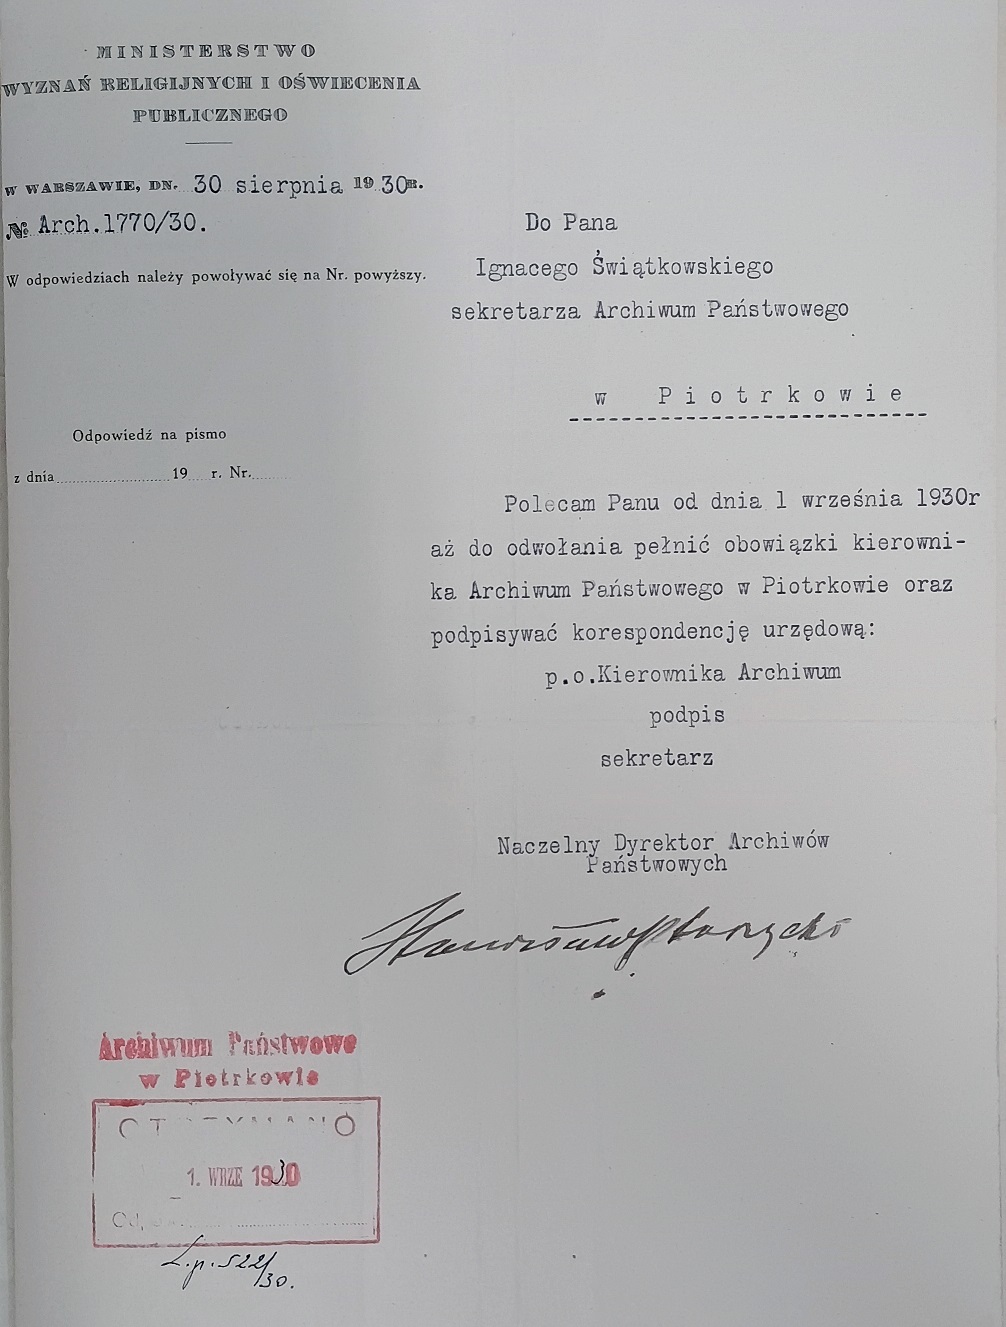 Nominacja Ignacego Świątkowskiego na kierownika Archiwum Państwowego w Piotrkowie, 1930 r.